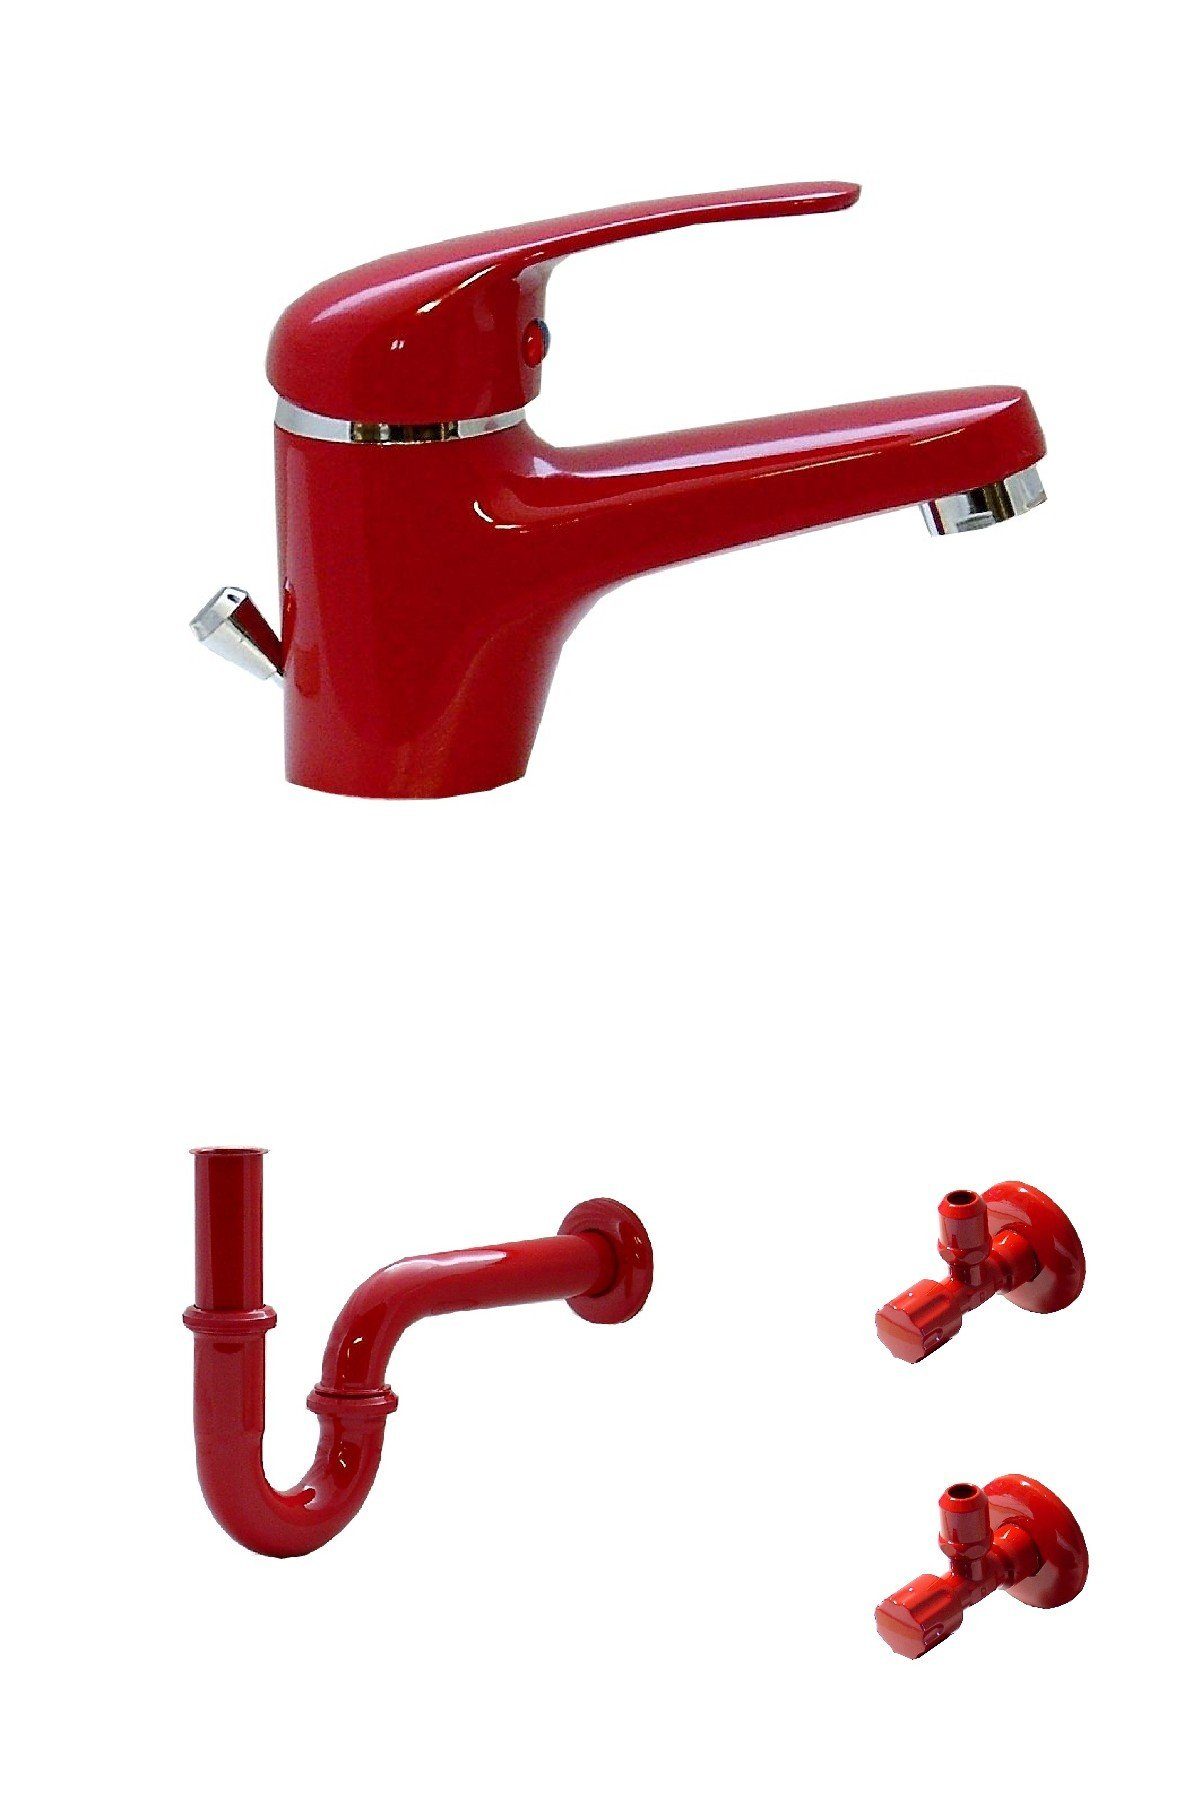 WAGNER® Waschtischarmatur Waschtisch Bad Wasserhahn Armatur Siphon 2 Eckventile Rot